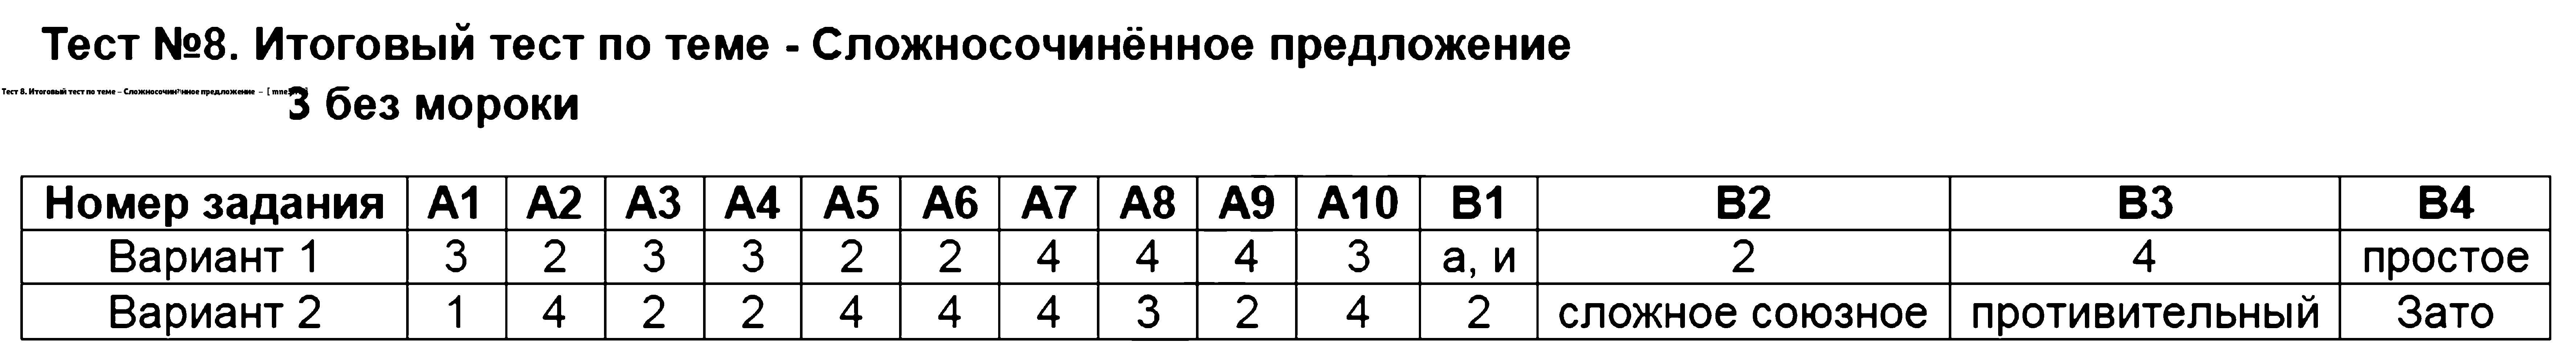 ГДЗ Русский язык 9 класс - Тест 8. Итоговый тест по теме - Сложносочинённое предложение